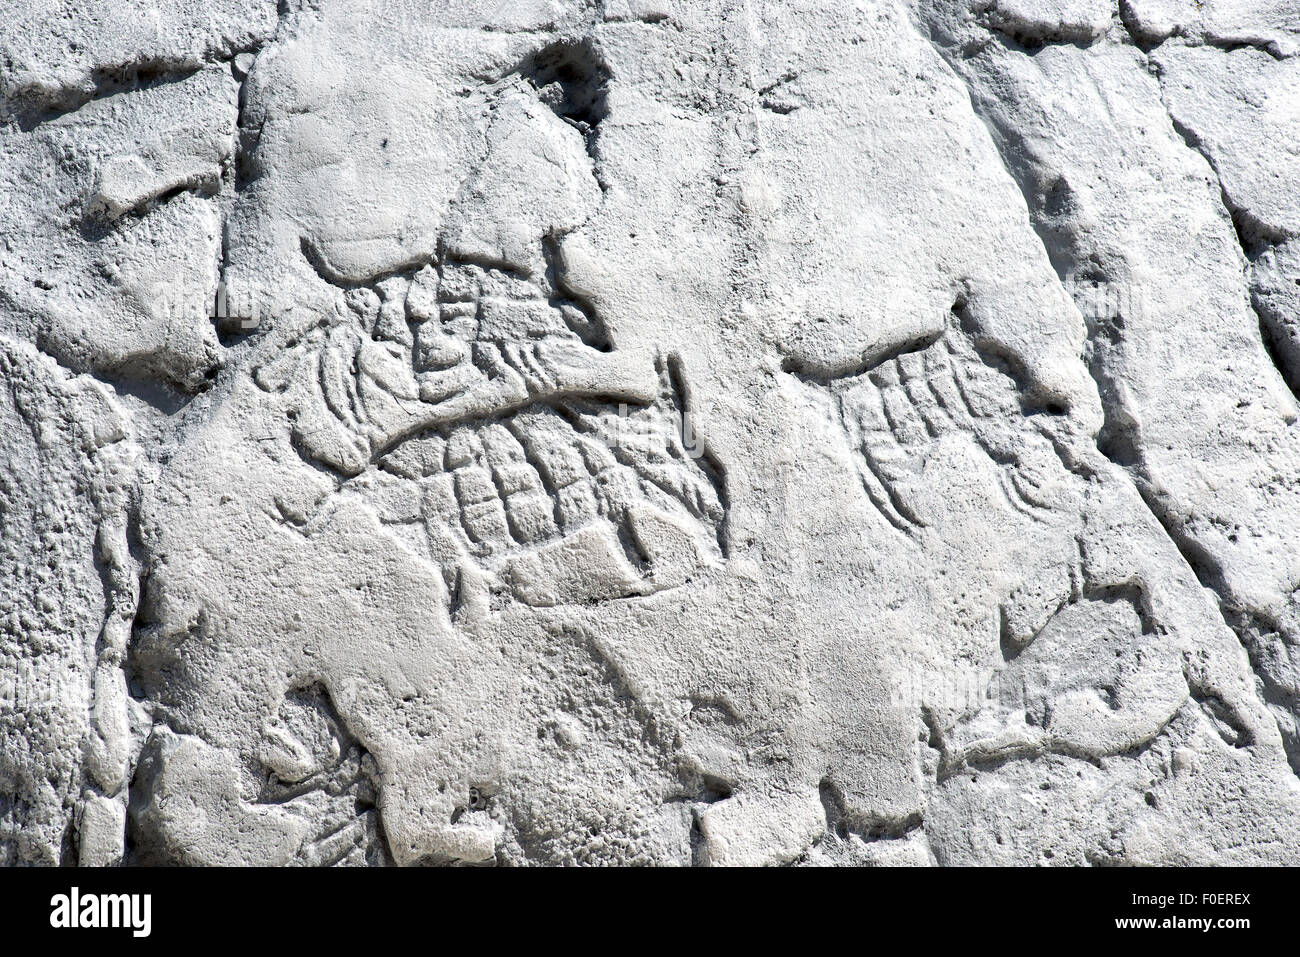 Obras de arte primitivo en una roca, animales y símbolos en piedra blanca Foto de stock